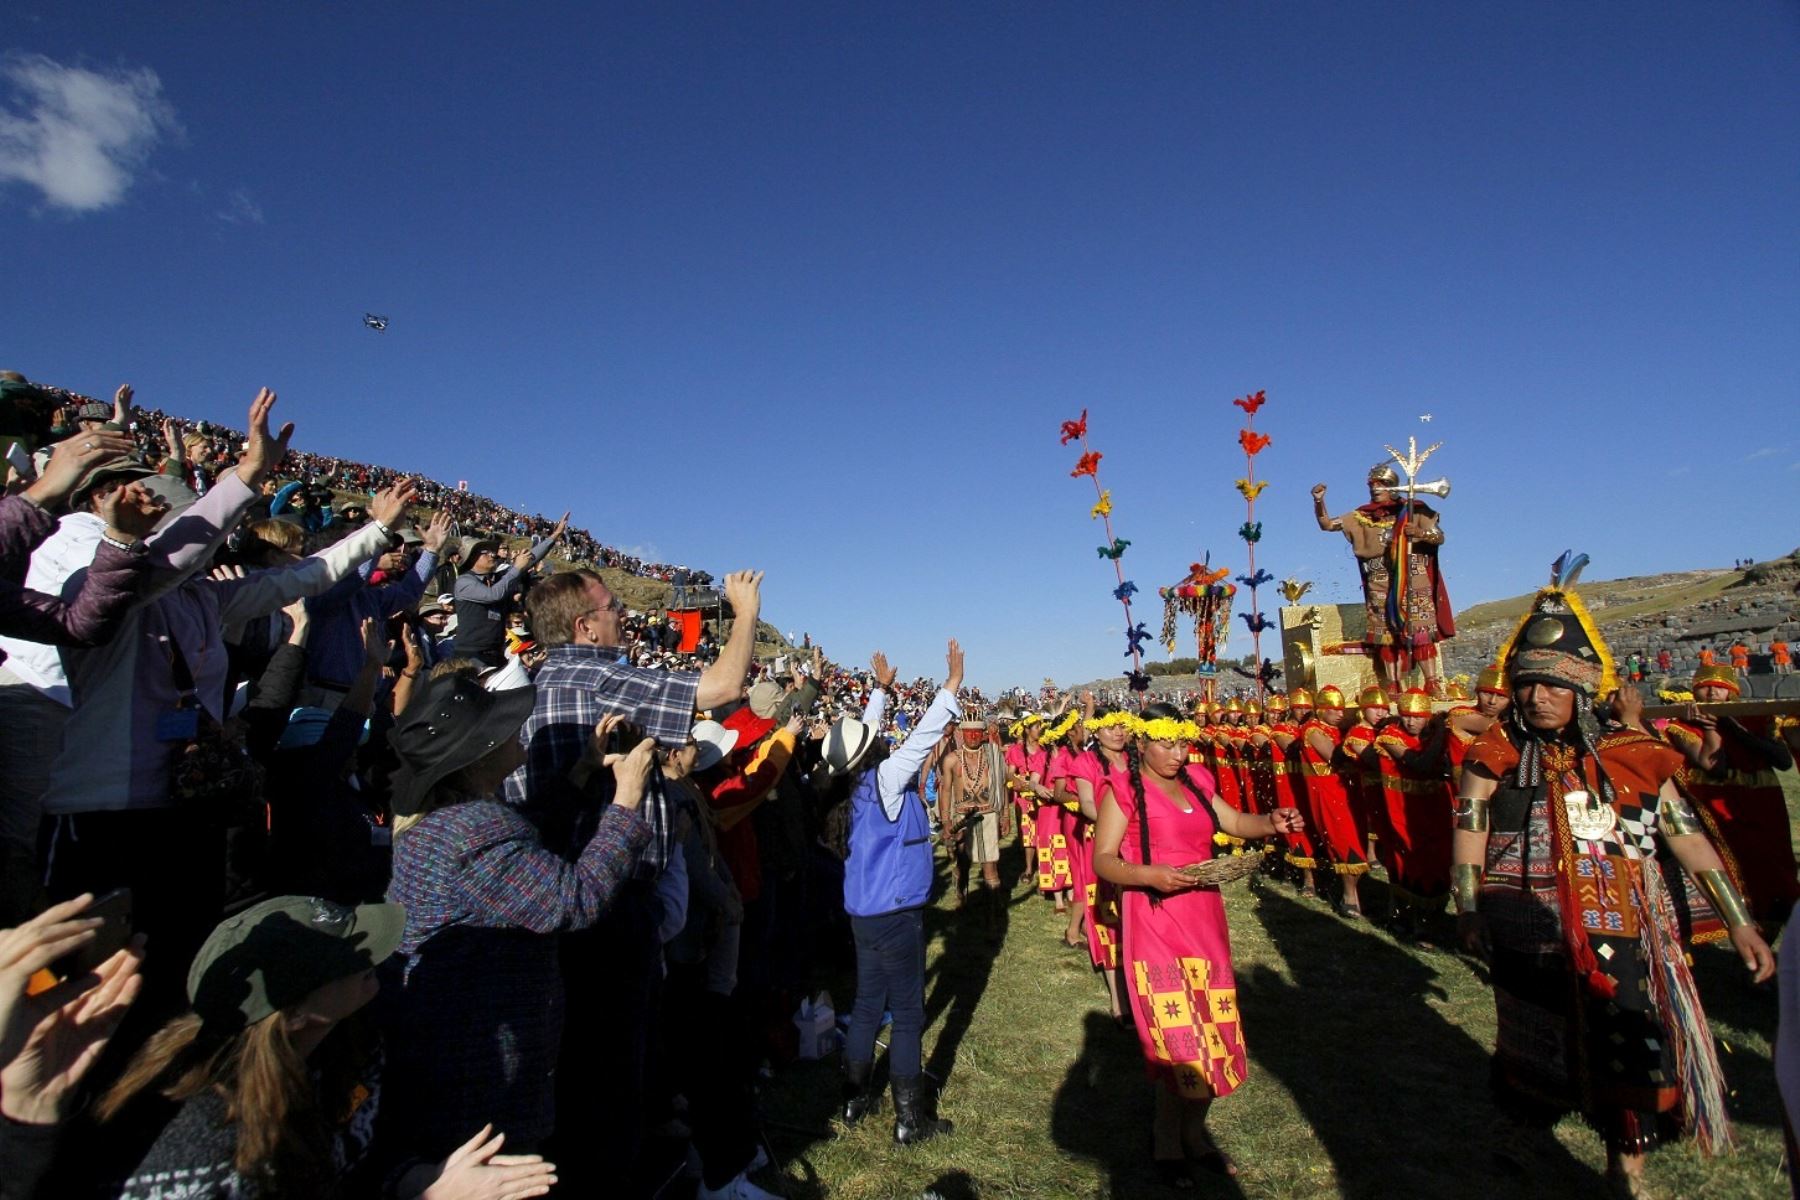 Agilizarán escenificación del Inti Raymi en Sacsayhuamán que se realiza el 24 de junio. ANDINA/Percy Hurtado.